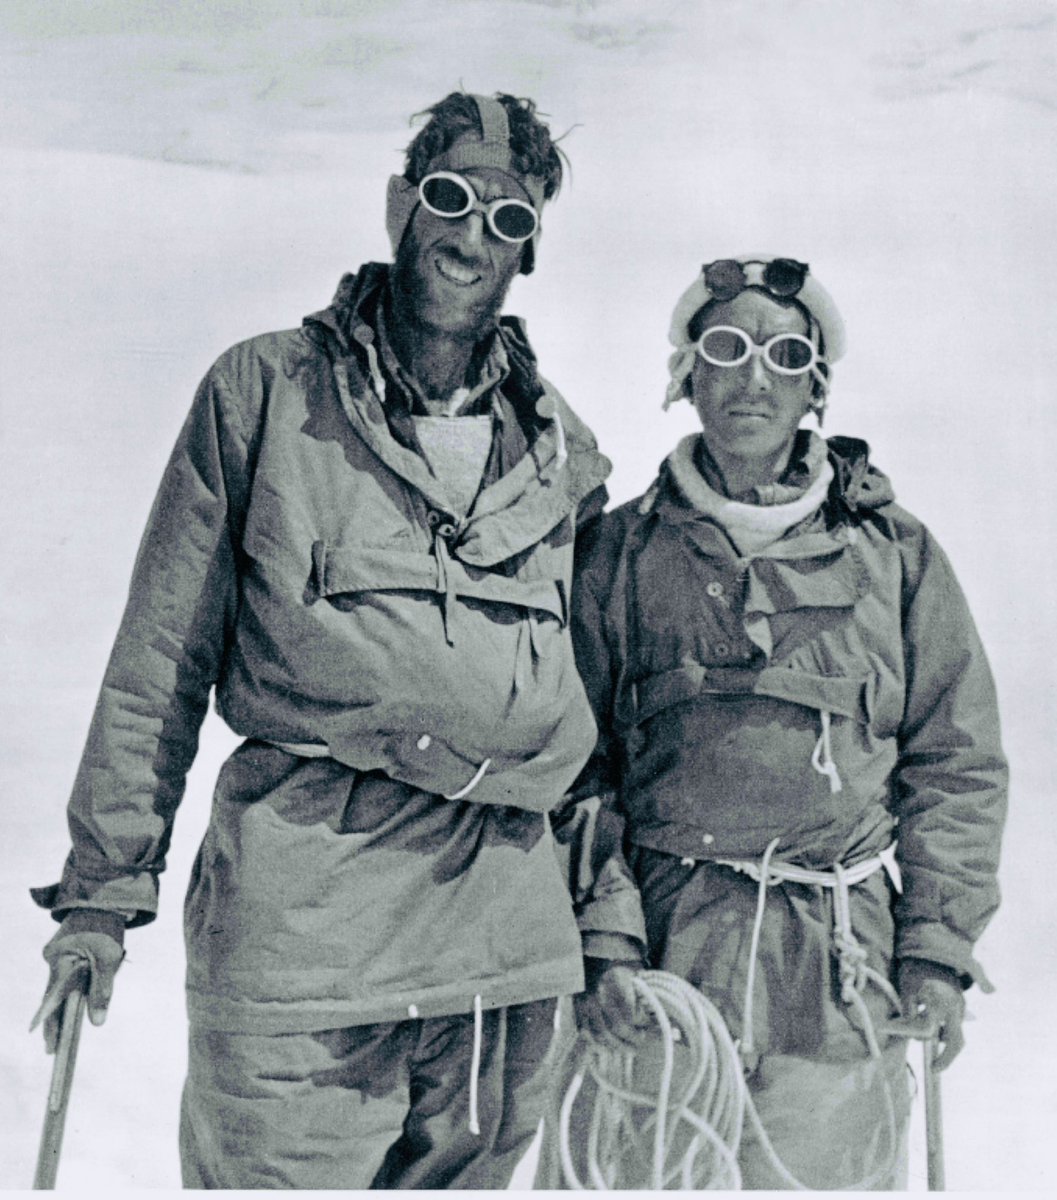 Il y a 71 ans jour pour jour,Tenzing Norgay Sherpa et Edmund Hillary atteignaient ensemble le sommet de l’Everest, jusque là « invaincu ». 
L’esprit de cordée atteignit là, lui aussi, sa forme la plus élevée.
Petit détail : dans leur récit, ils n’eurent pas besoin de préciser que